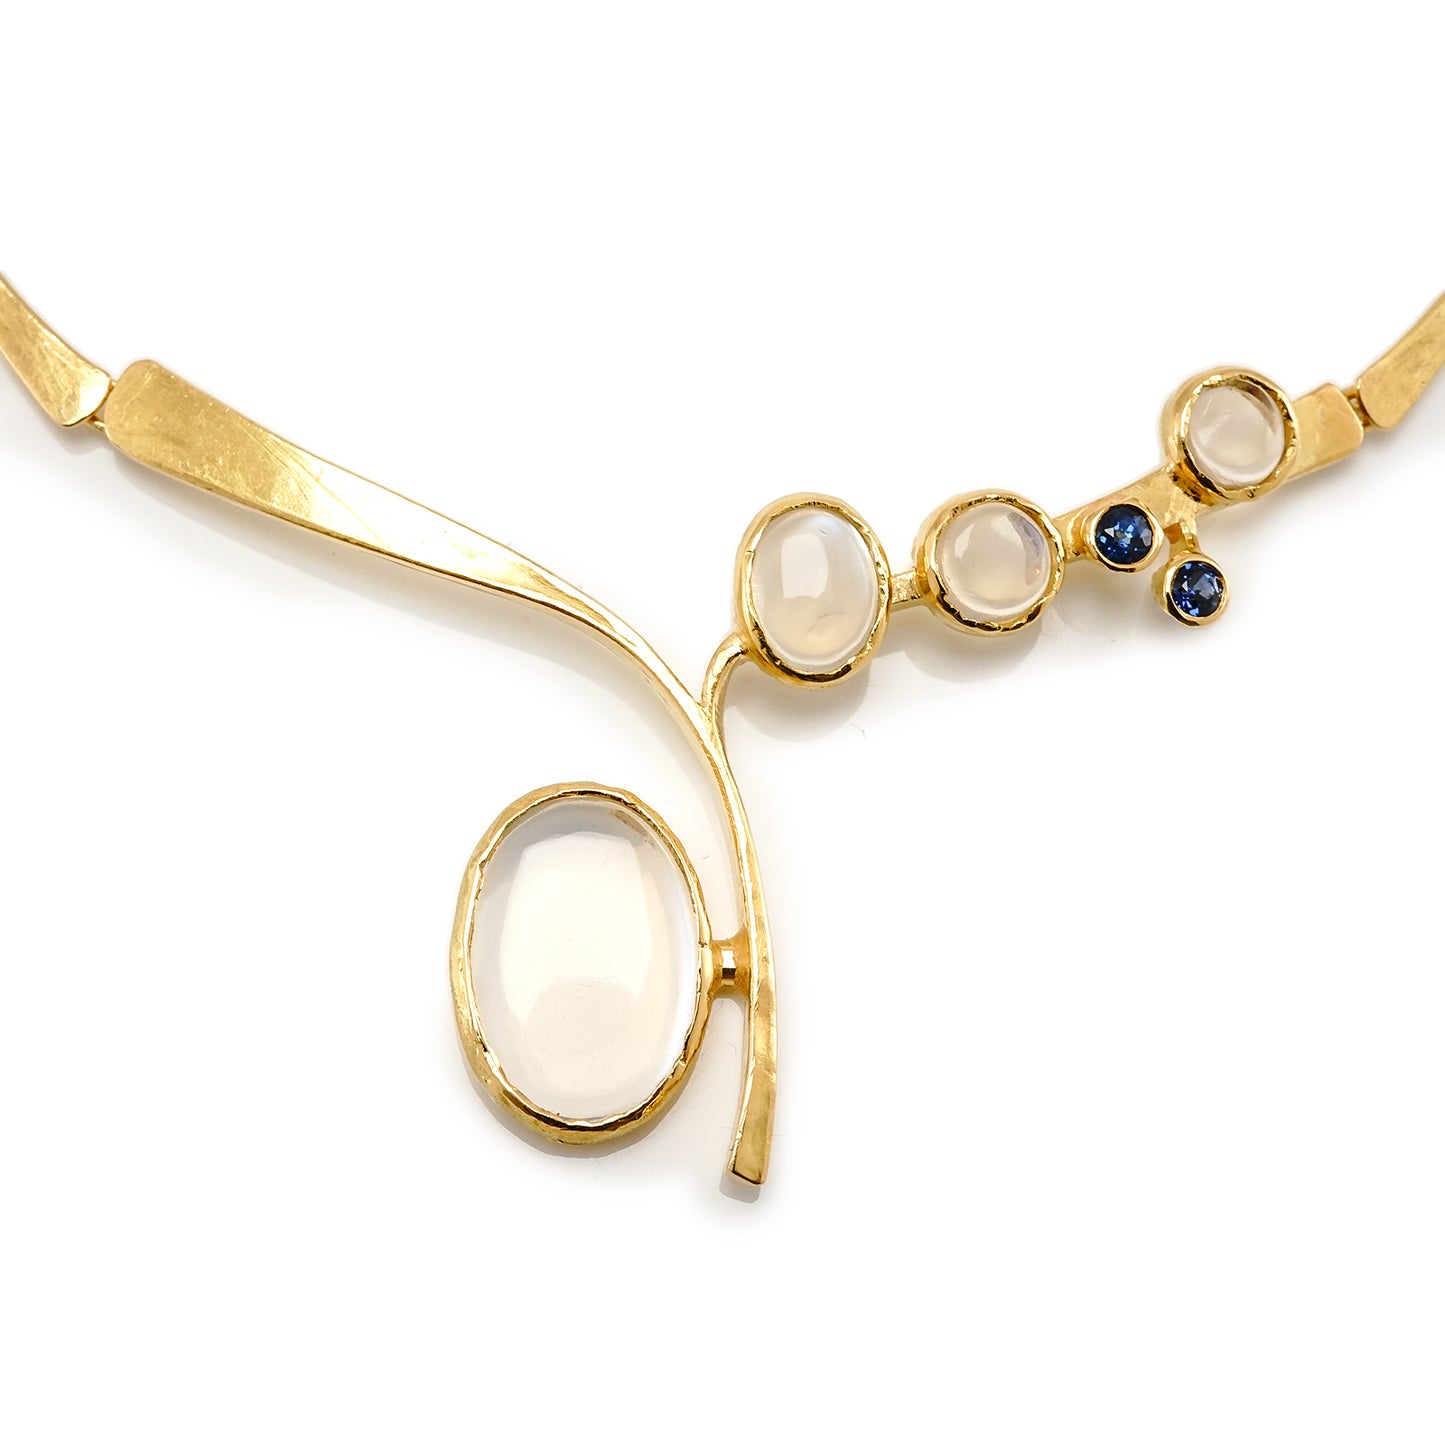 Collier Gelbgold Mondstein Saphir Set Kette 750 18K 42cm Damenschmuck Goldkette